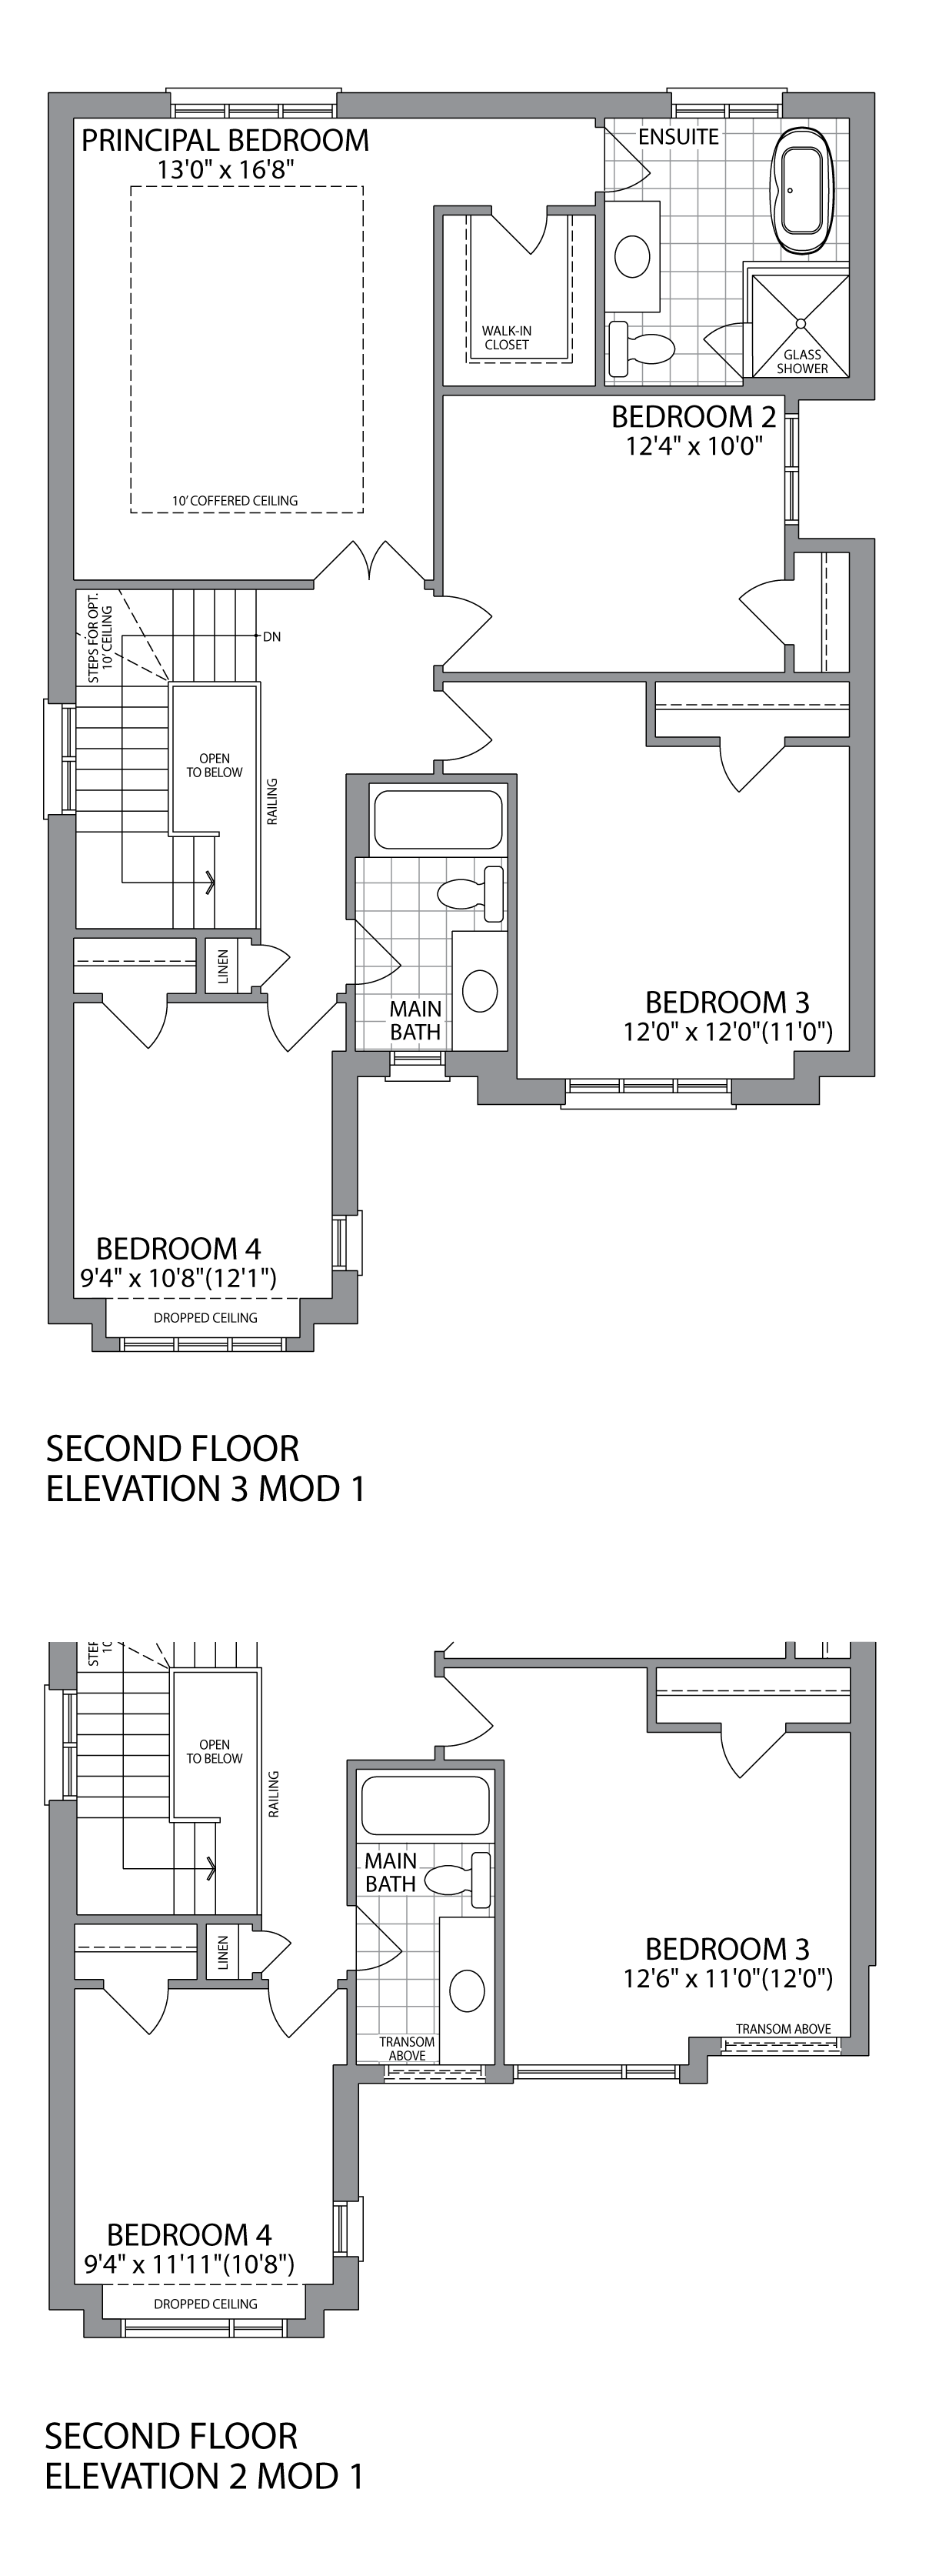  Second Floor